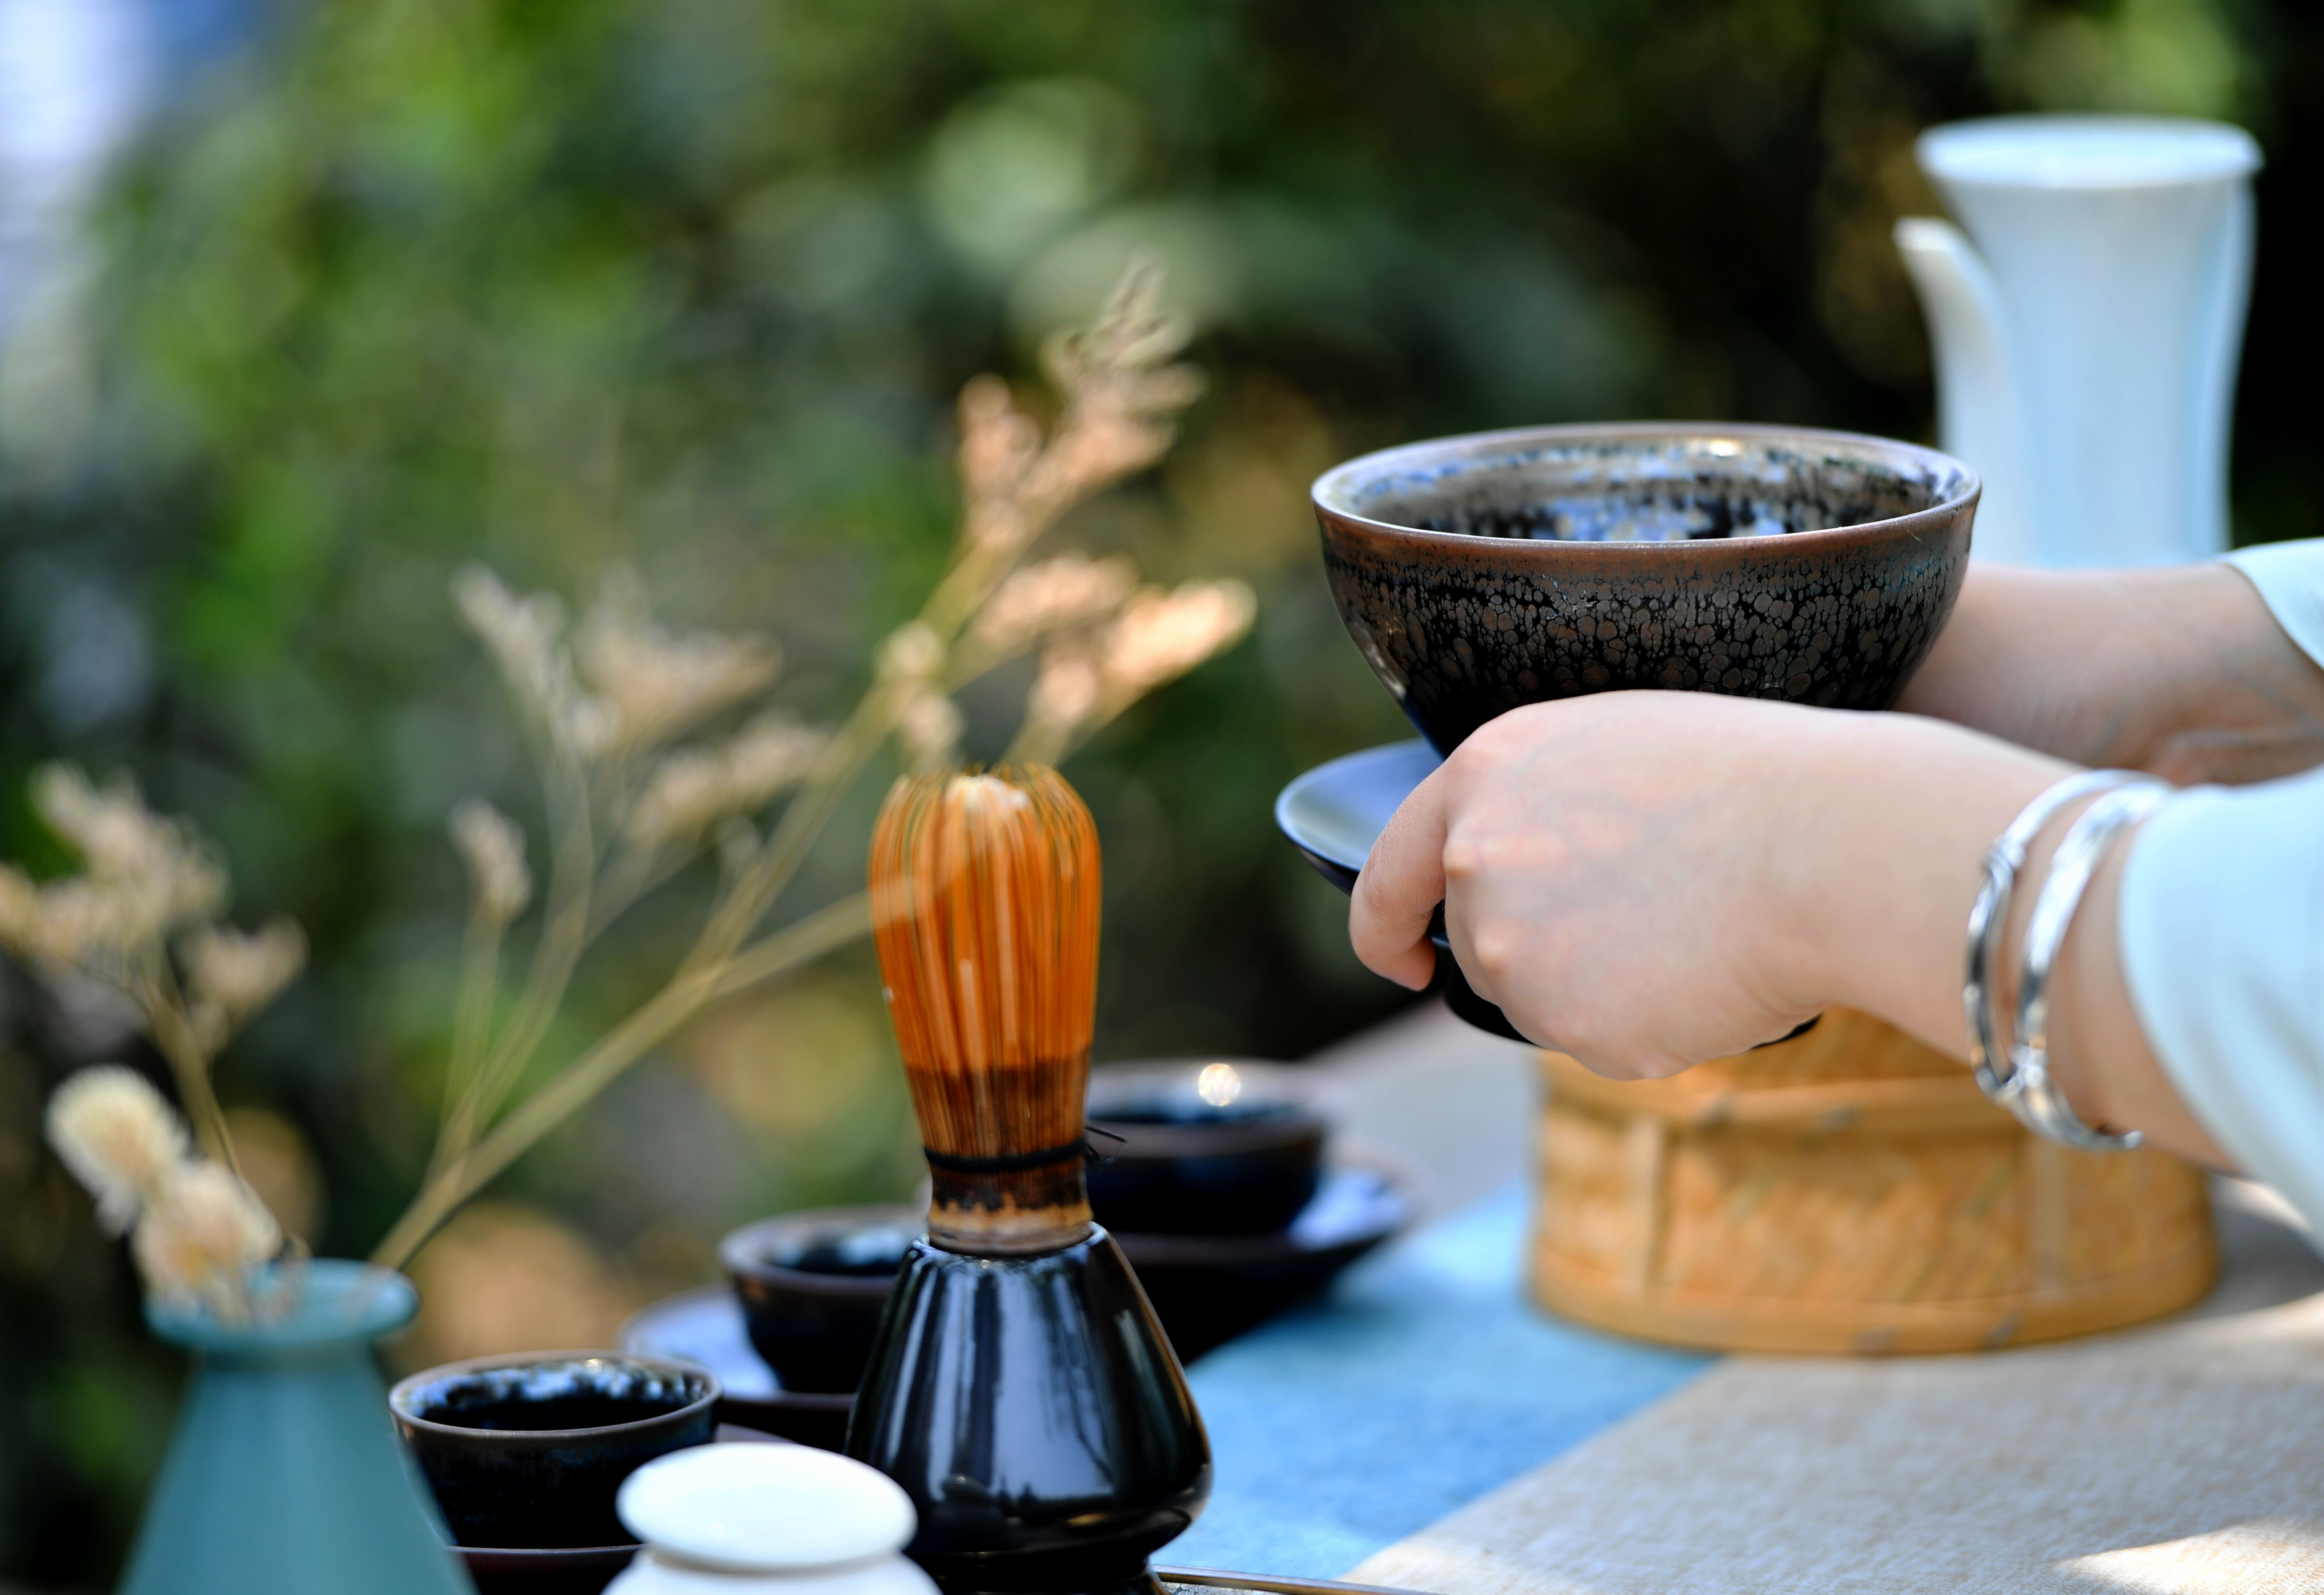 茶と茶わんで継承する宋代の茶文化、中国・福建省南平市 写真9枚 国際